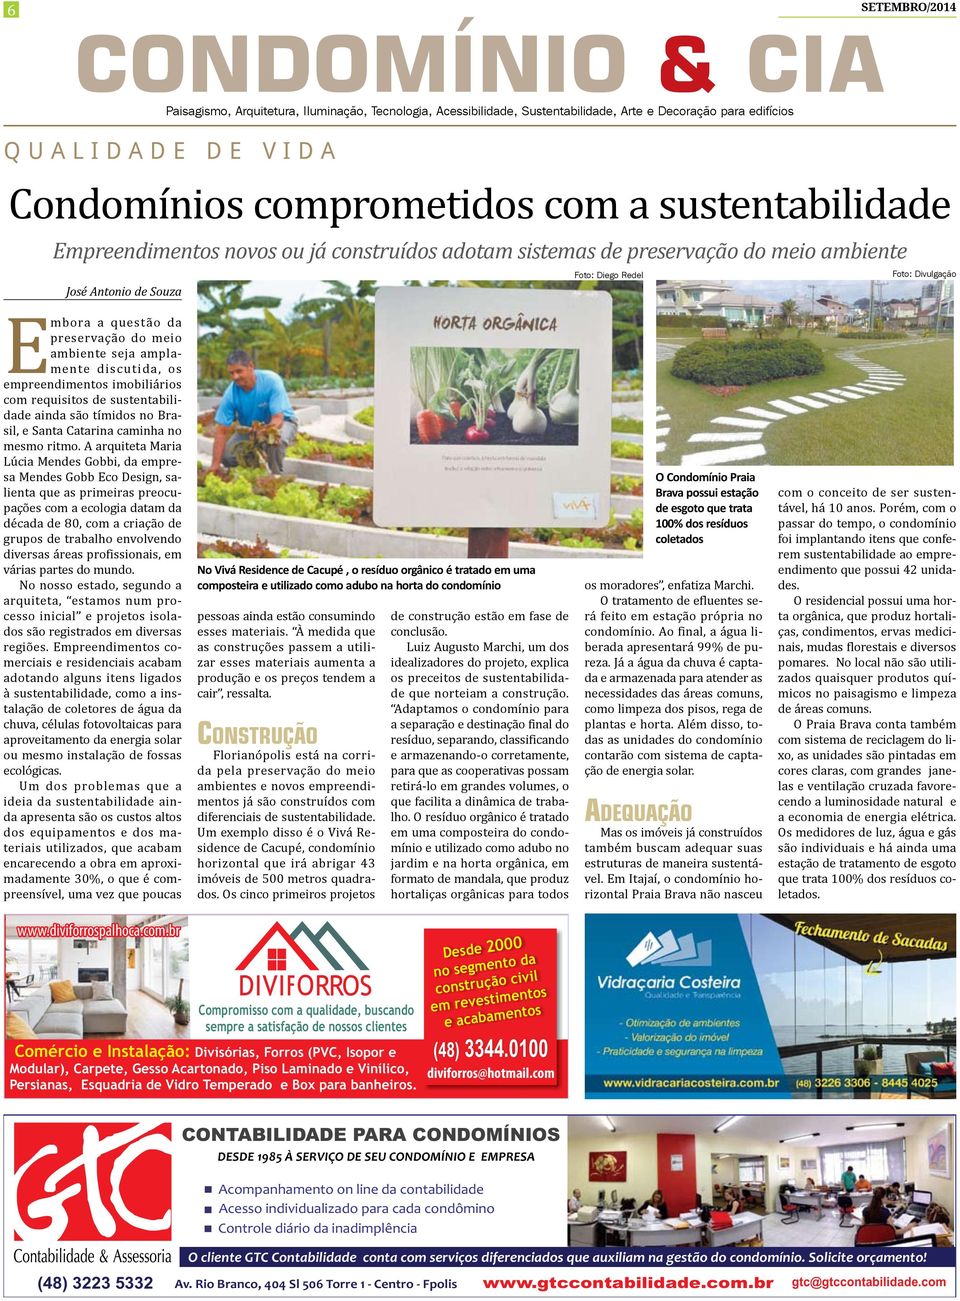 da preservação do meio ambiente seja amplamente discutida, os empreendimentos imobiliários com requisitos de sustentabilidade ainda são tímidos no Brasil, e Santa Catarina caminha no mesmo ritmo.